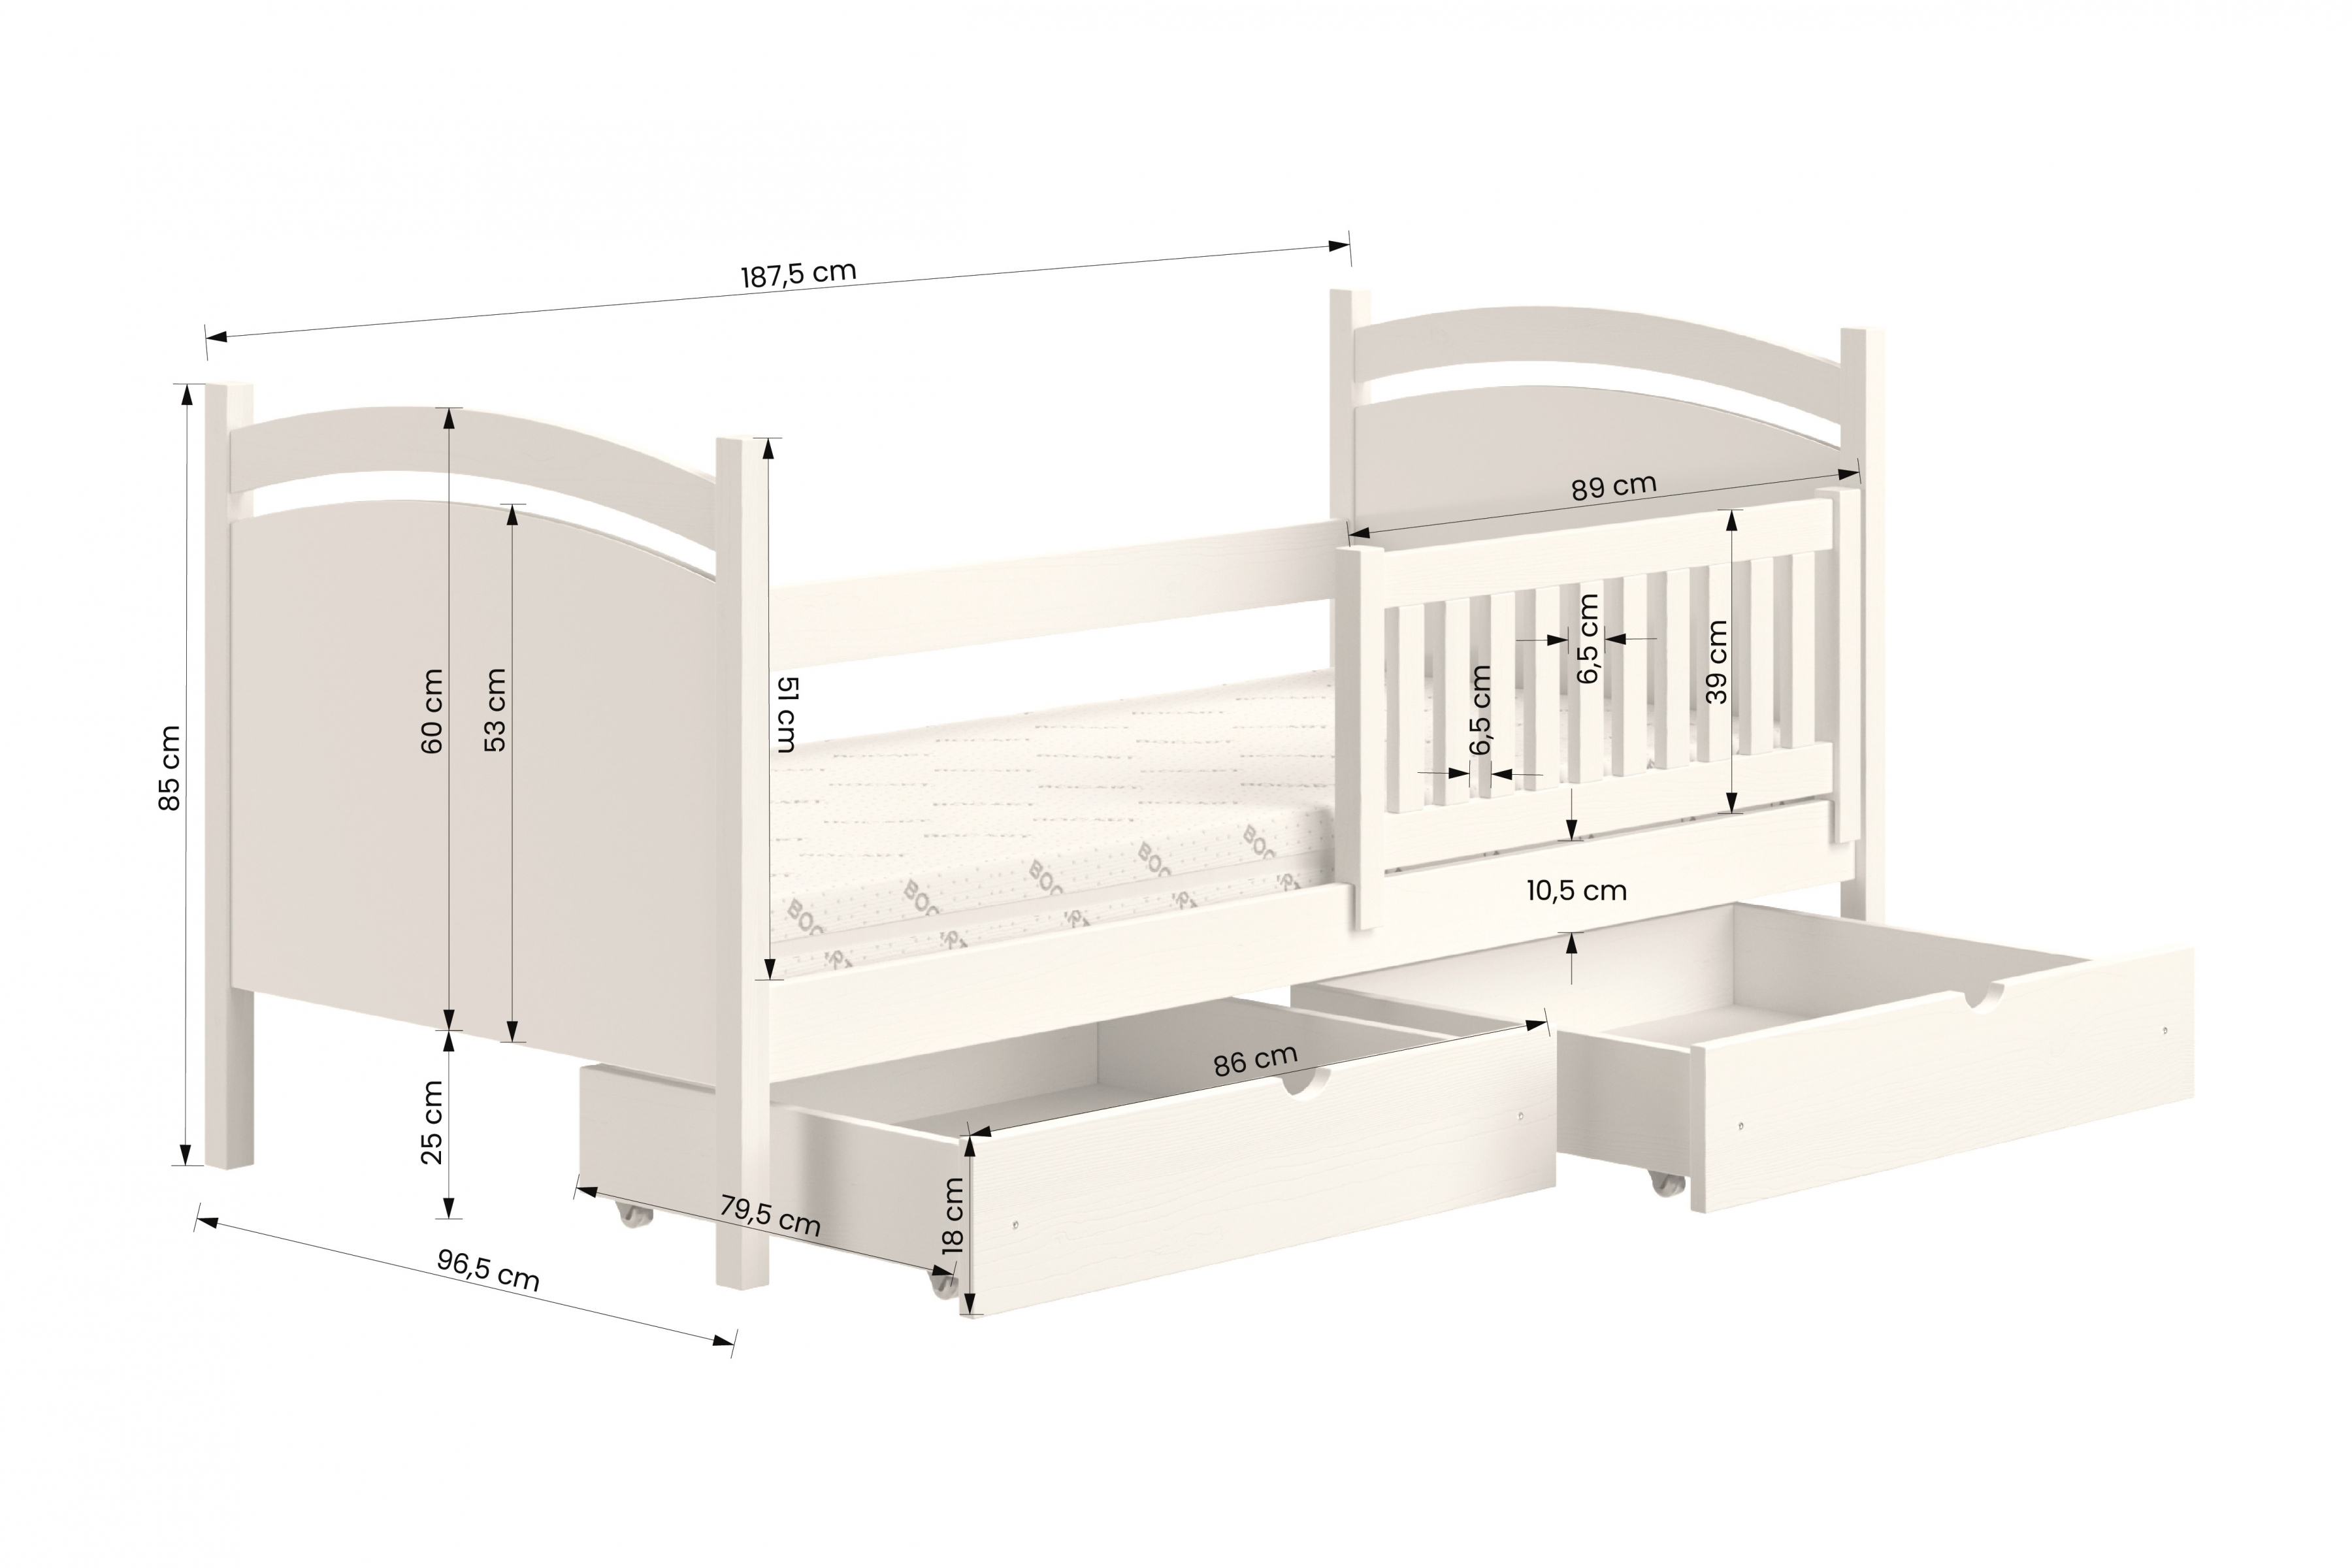 Detská posteľ s tabuľou Amely - Farba šedý, rozmer 90x180 Posteľ dzieciece z tablica suchoscieralna Amely - Rozmery